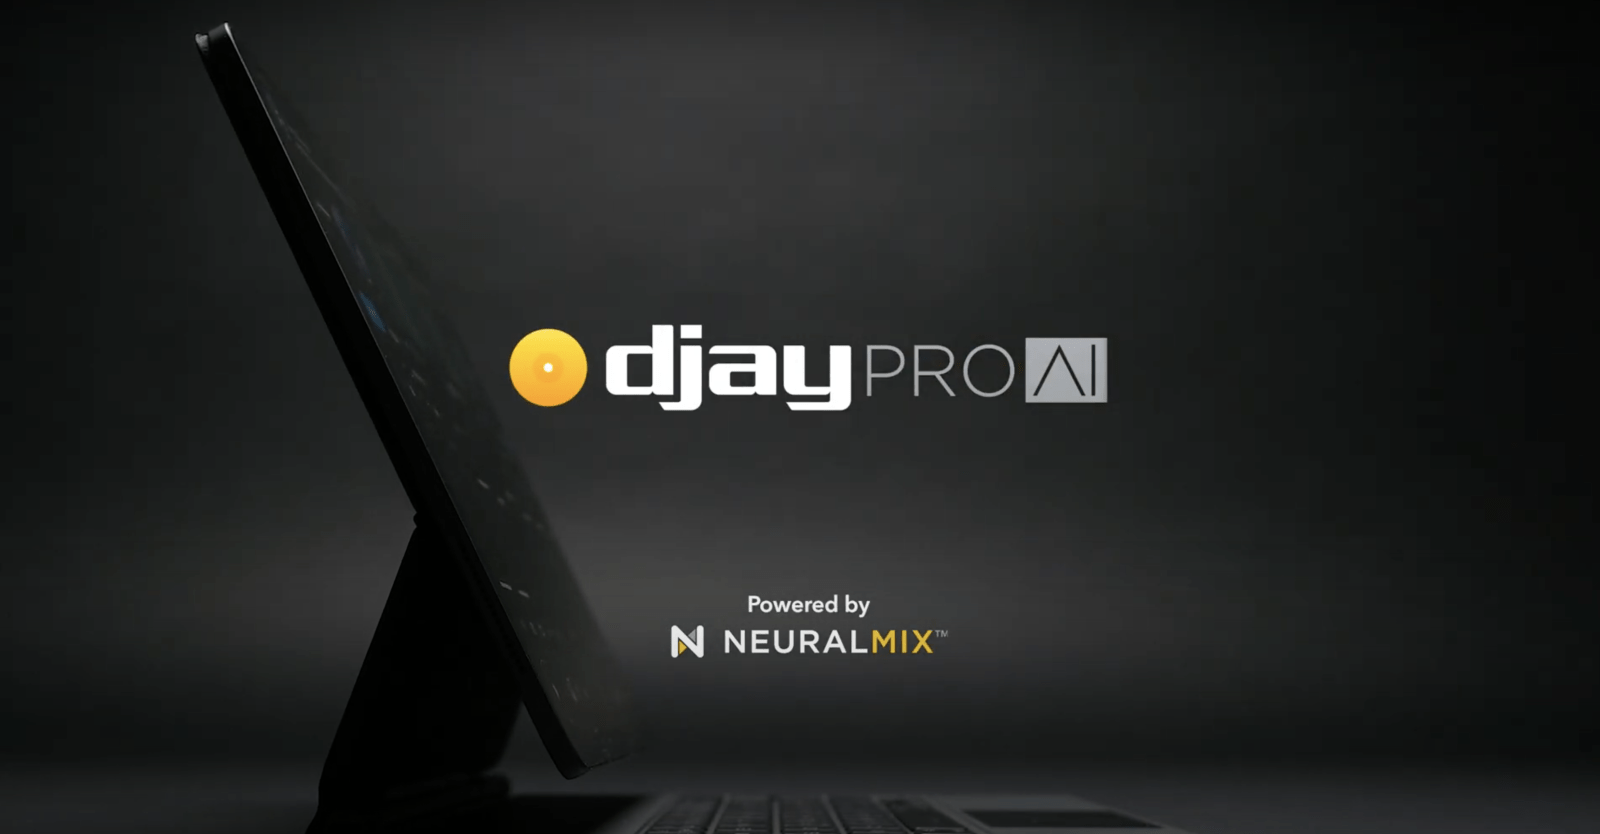 djay Pro AI Neural Mix update iPad app